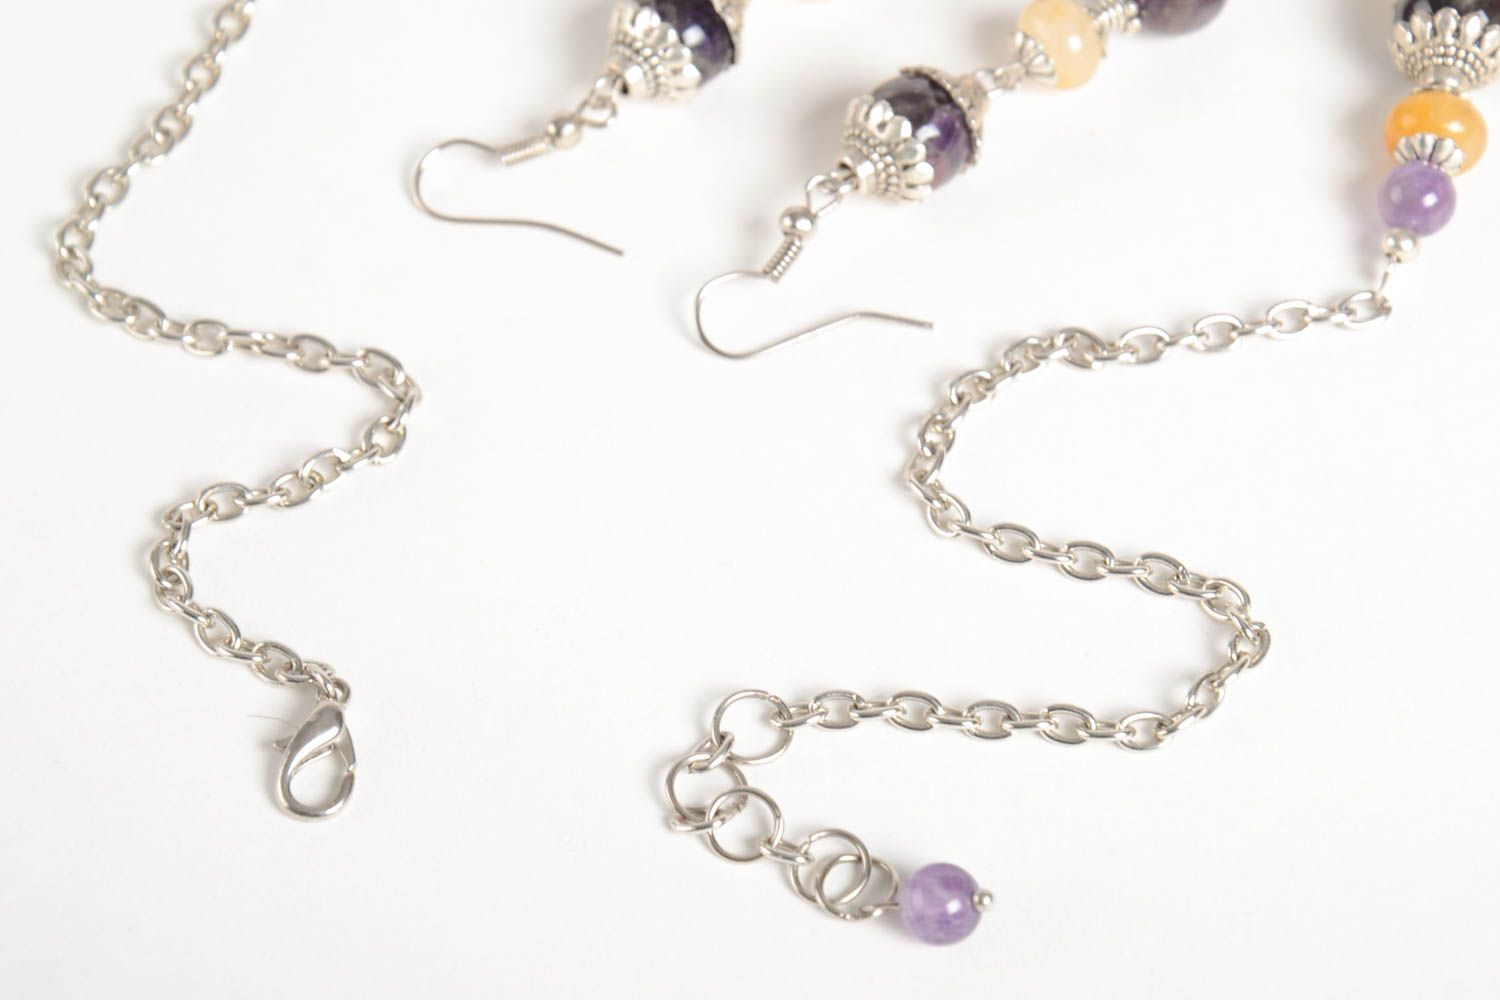 Handmade stylish earrings designer unusual necklace stylish jewelry set photo 4